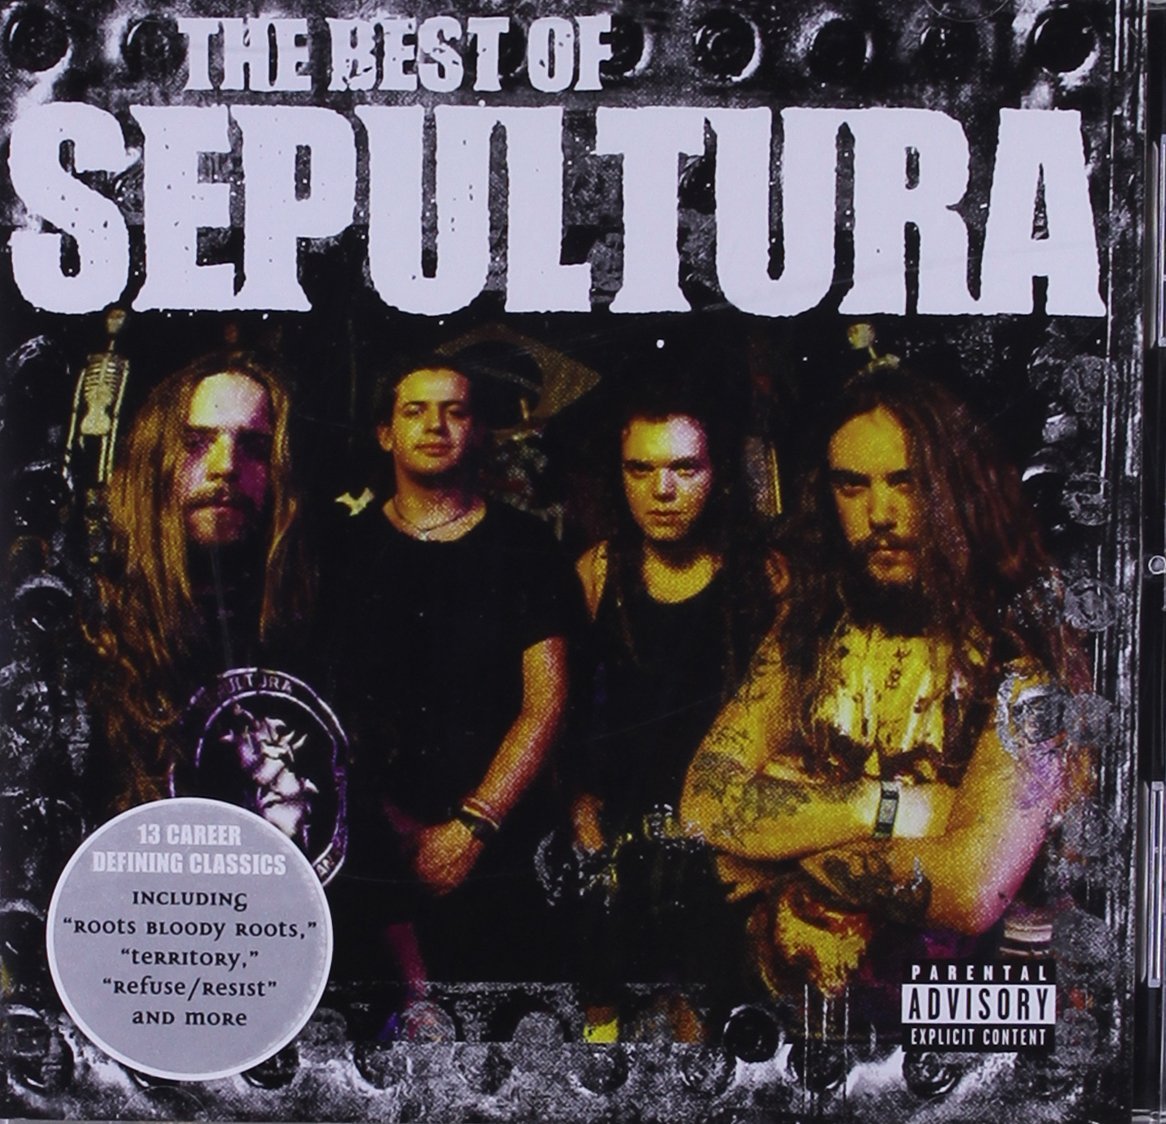 Sepultura "The Best Of Sepultura" CD